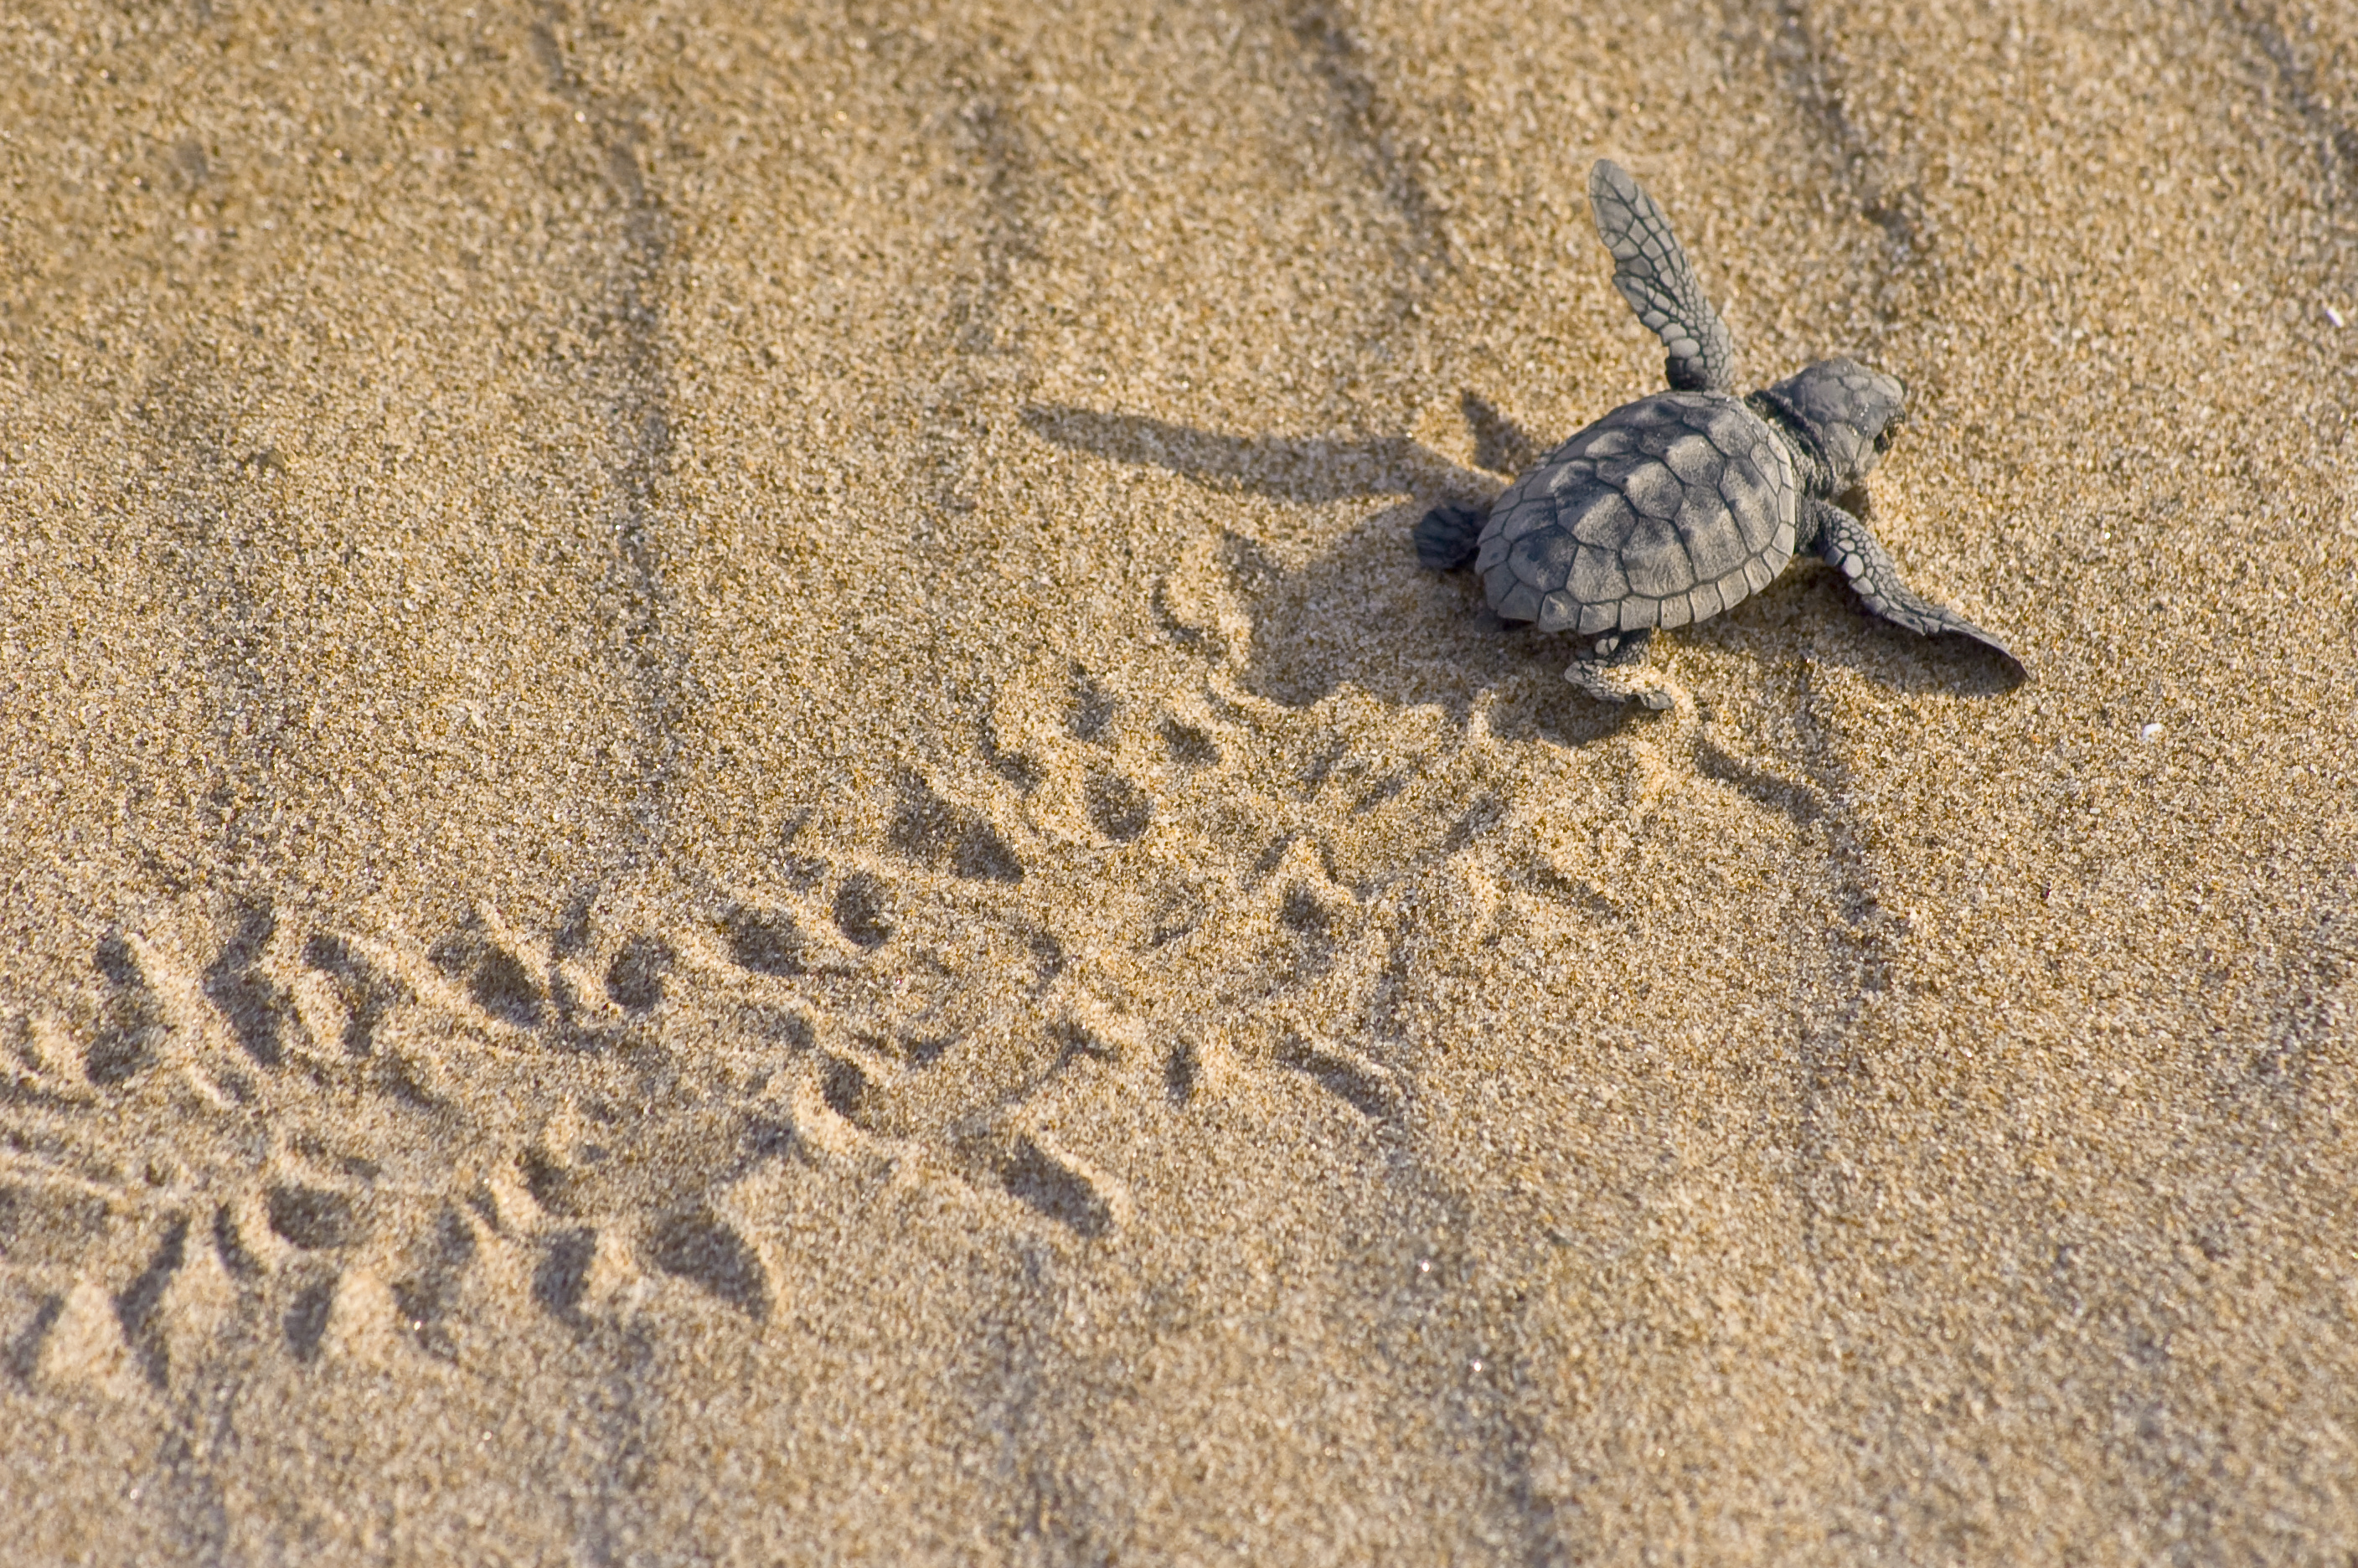 Una cría de tortuga boba sobre la arena de la playa. Imagen: Benjamín Albiach Galán / Miteco